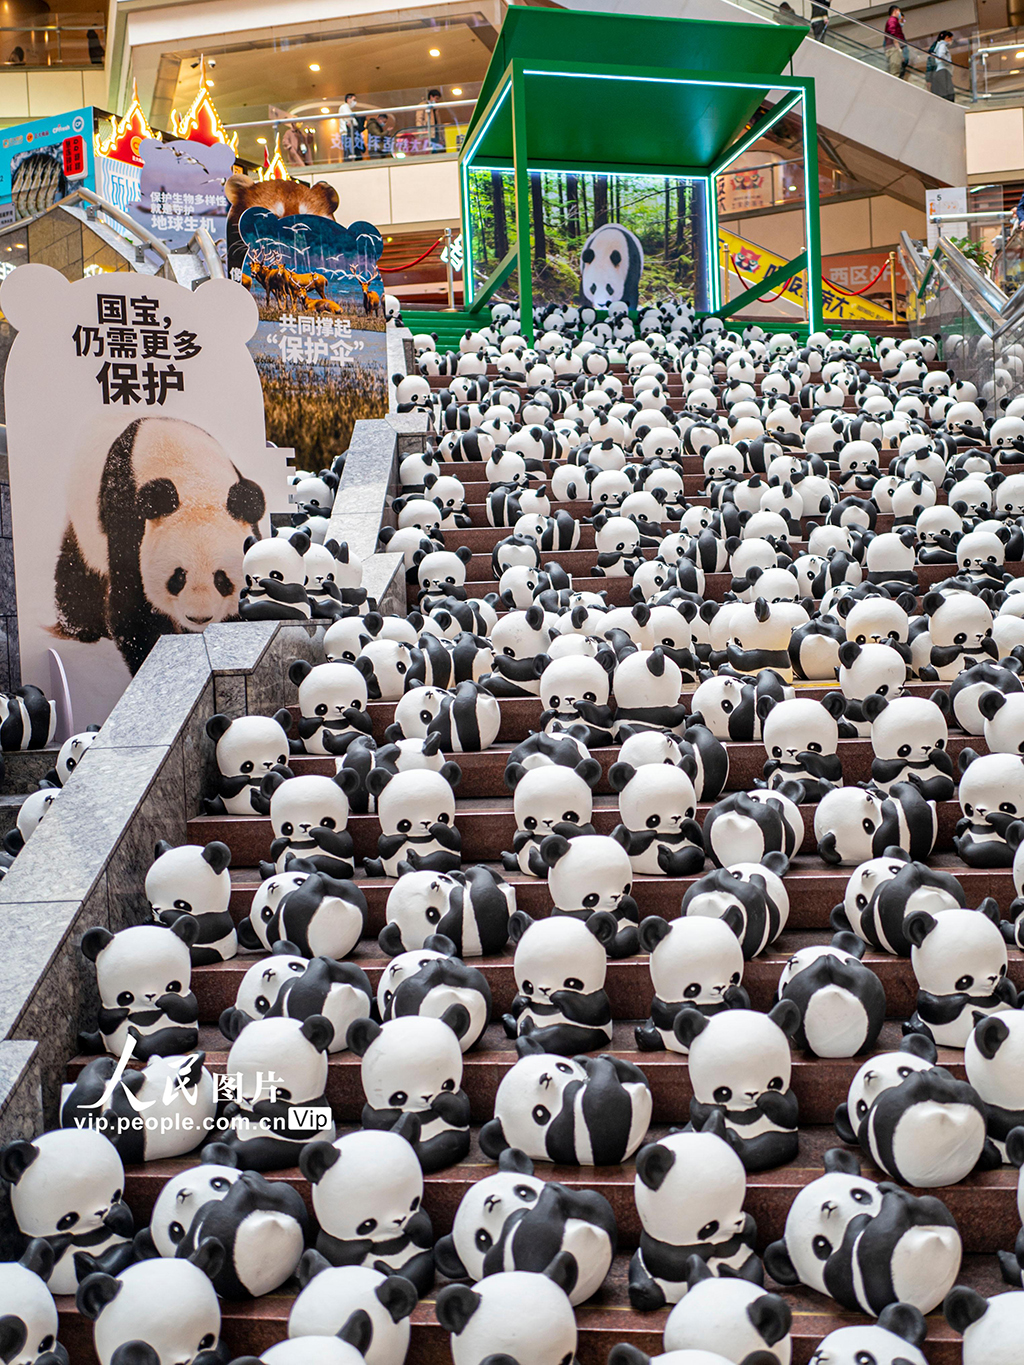 大熊貓巡展 呼吁生物多樣性保護【3】